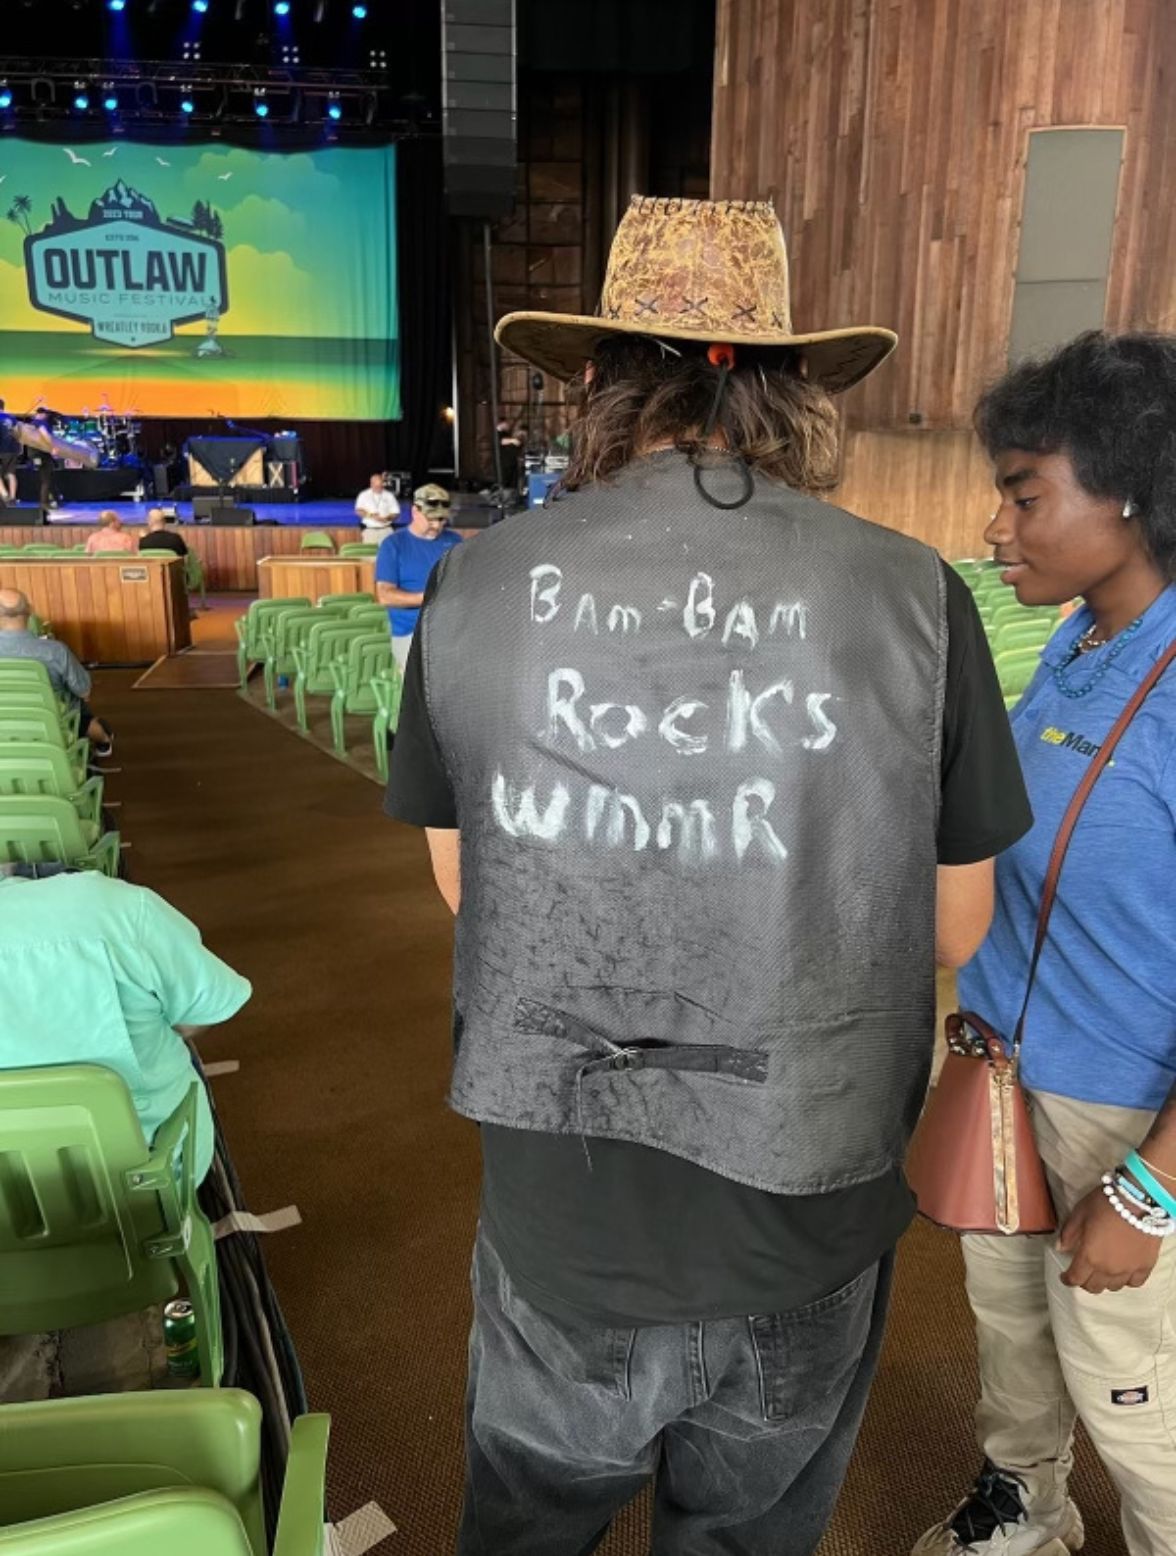 a fan wearing a vest with "BamBam rocks WMMR" handwritten onto it